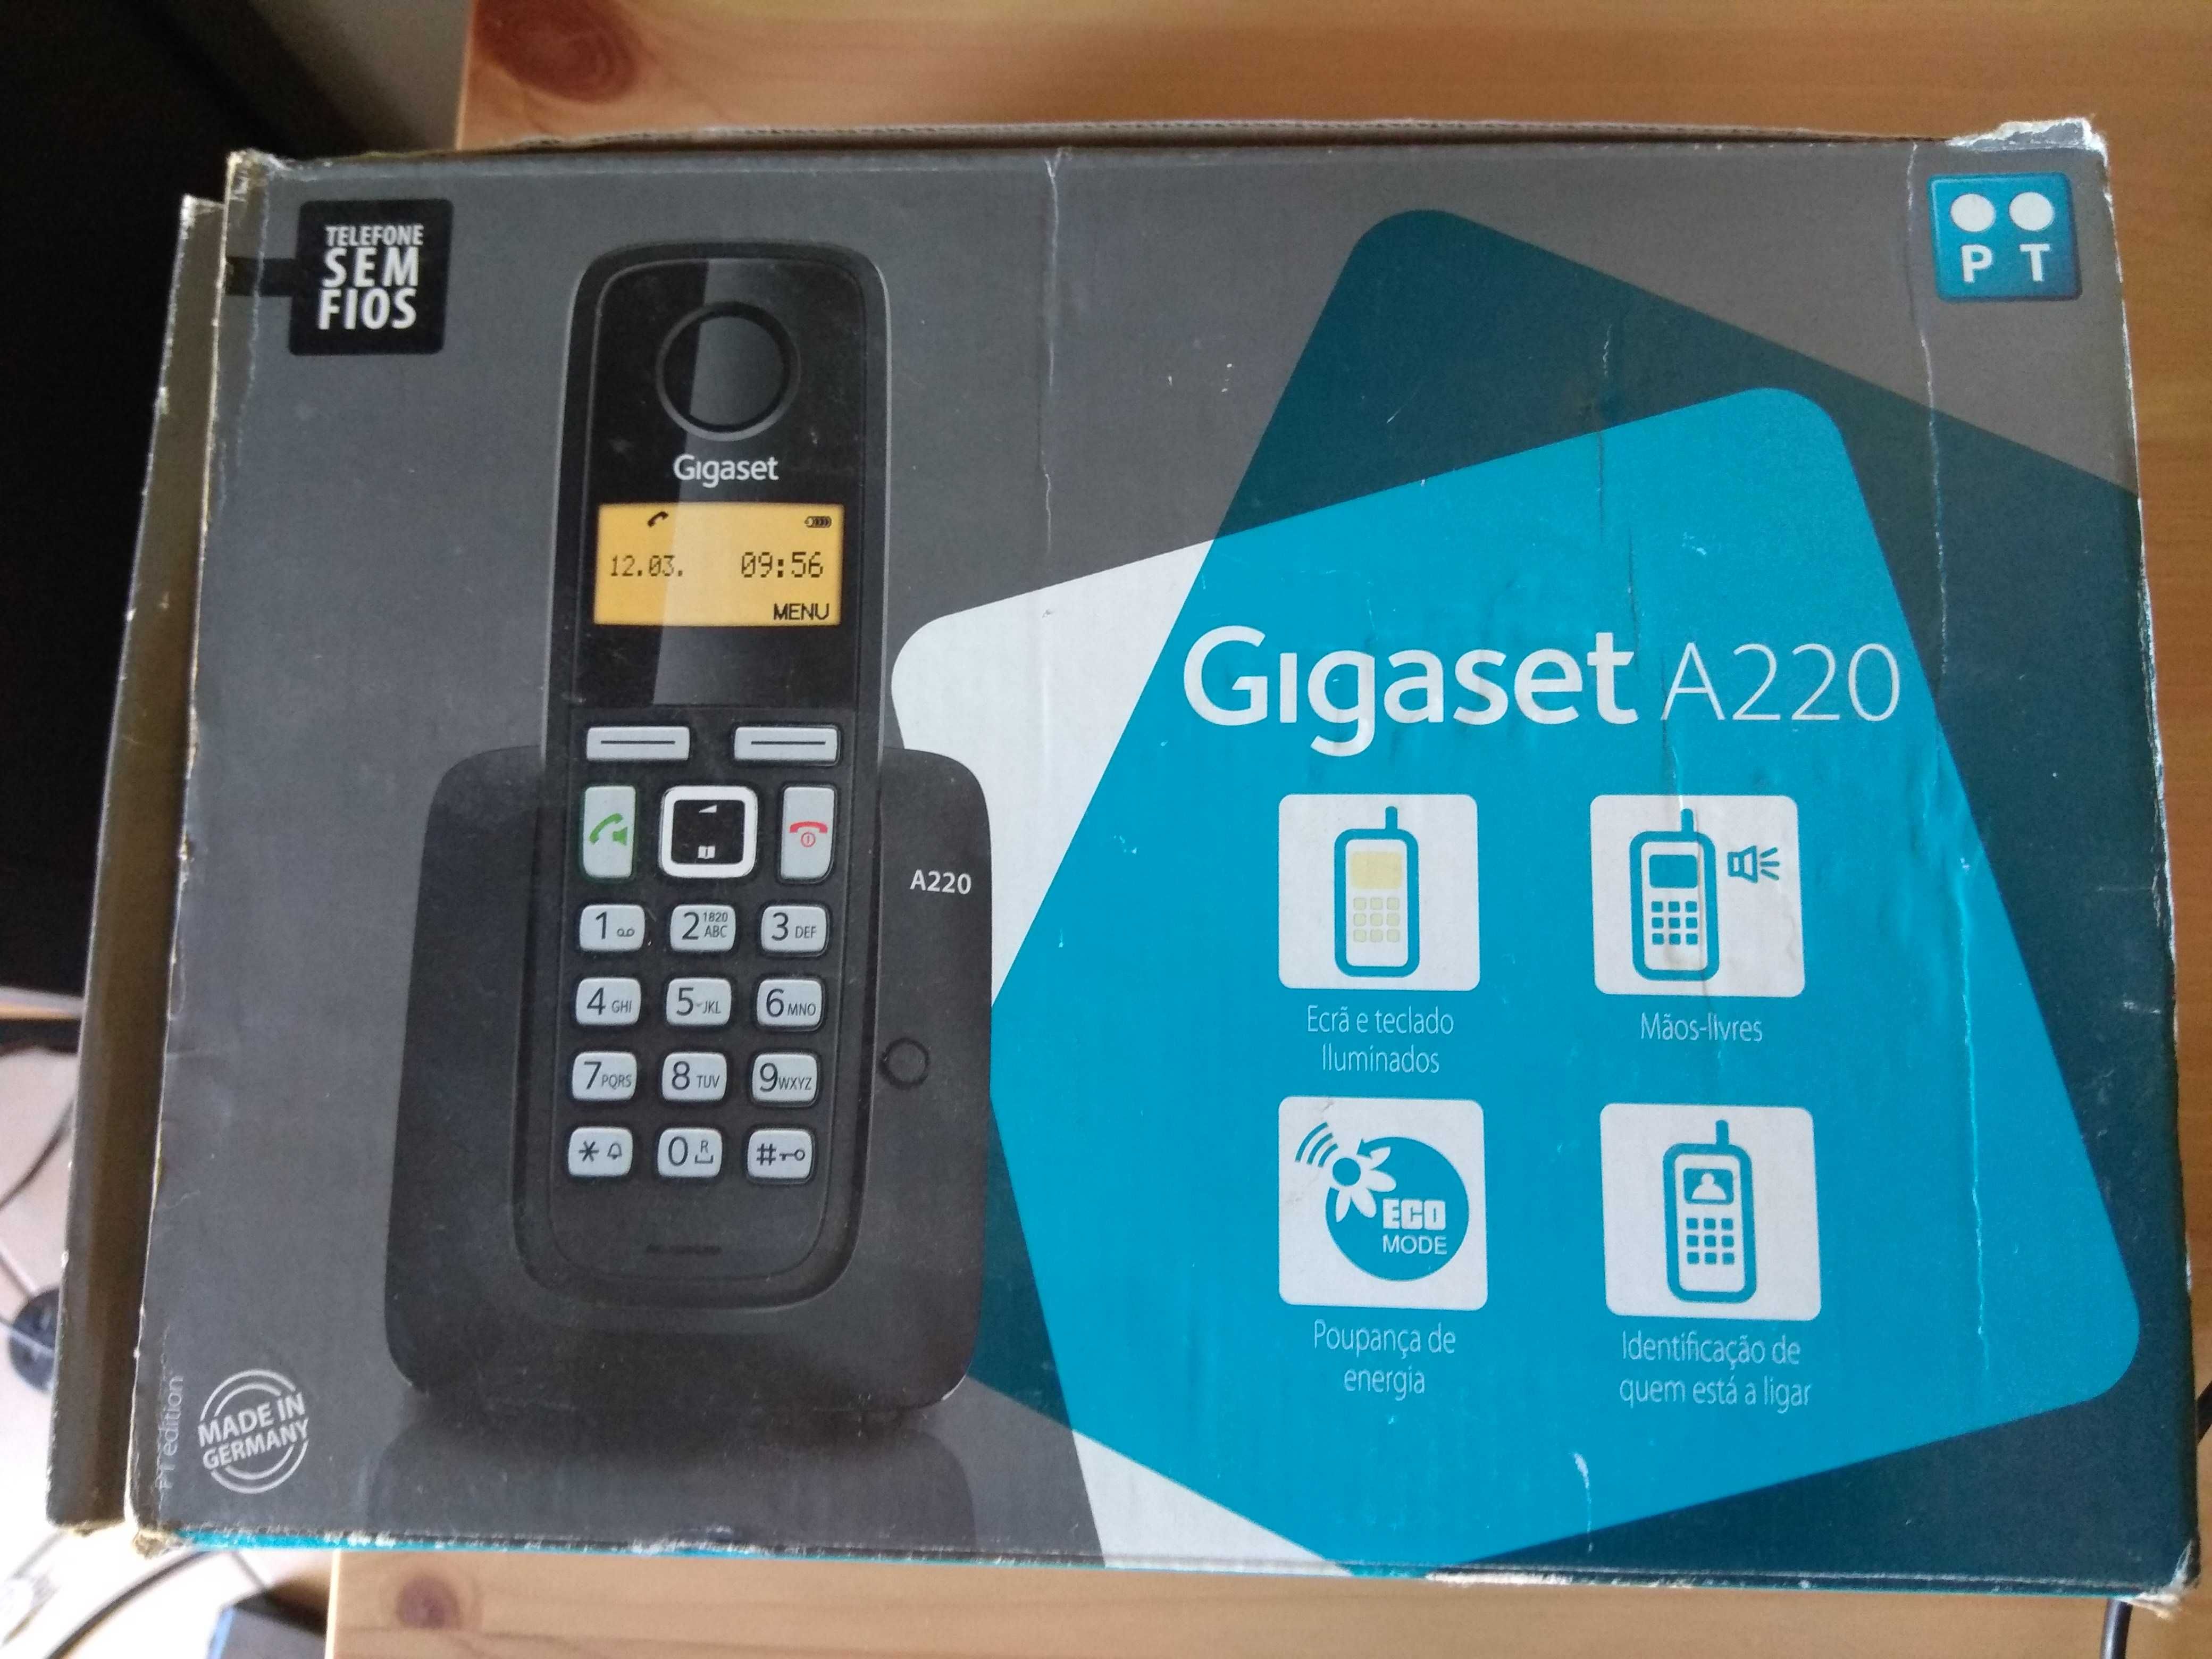 Telefone sem fios Gigaset A220 e base de carregamento A220